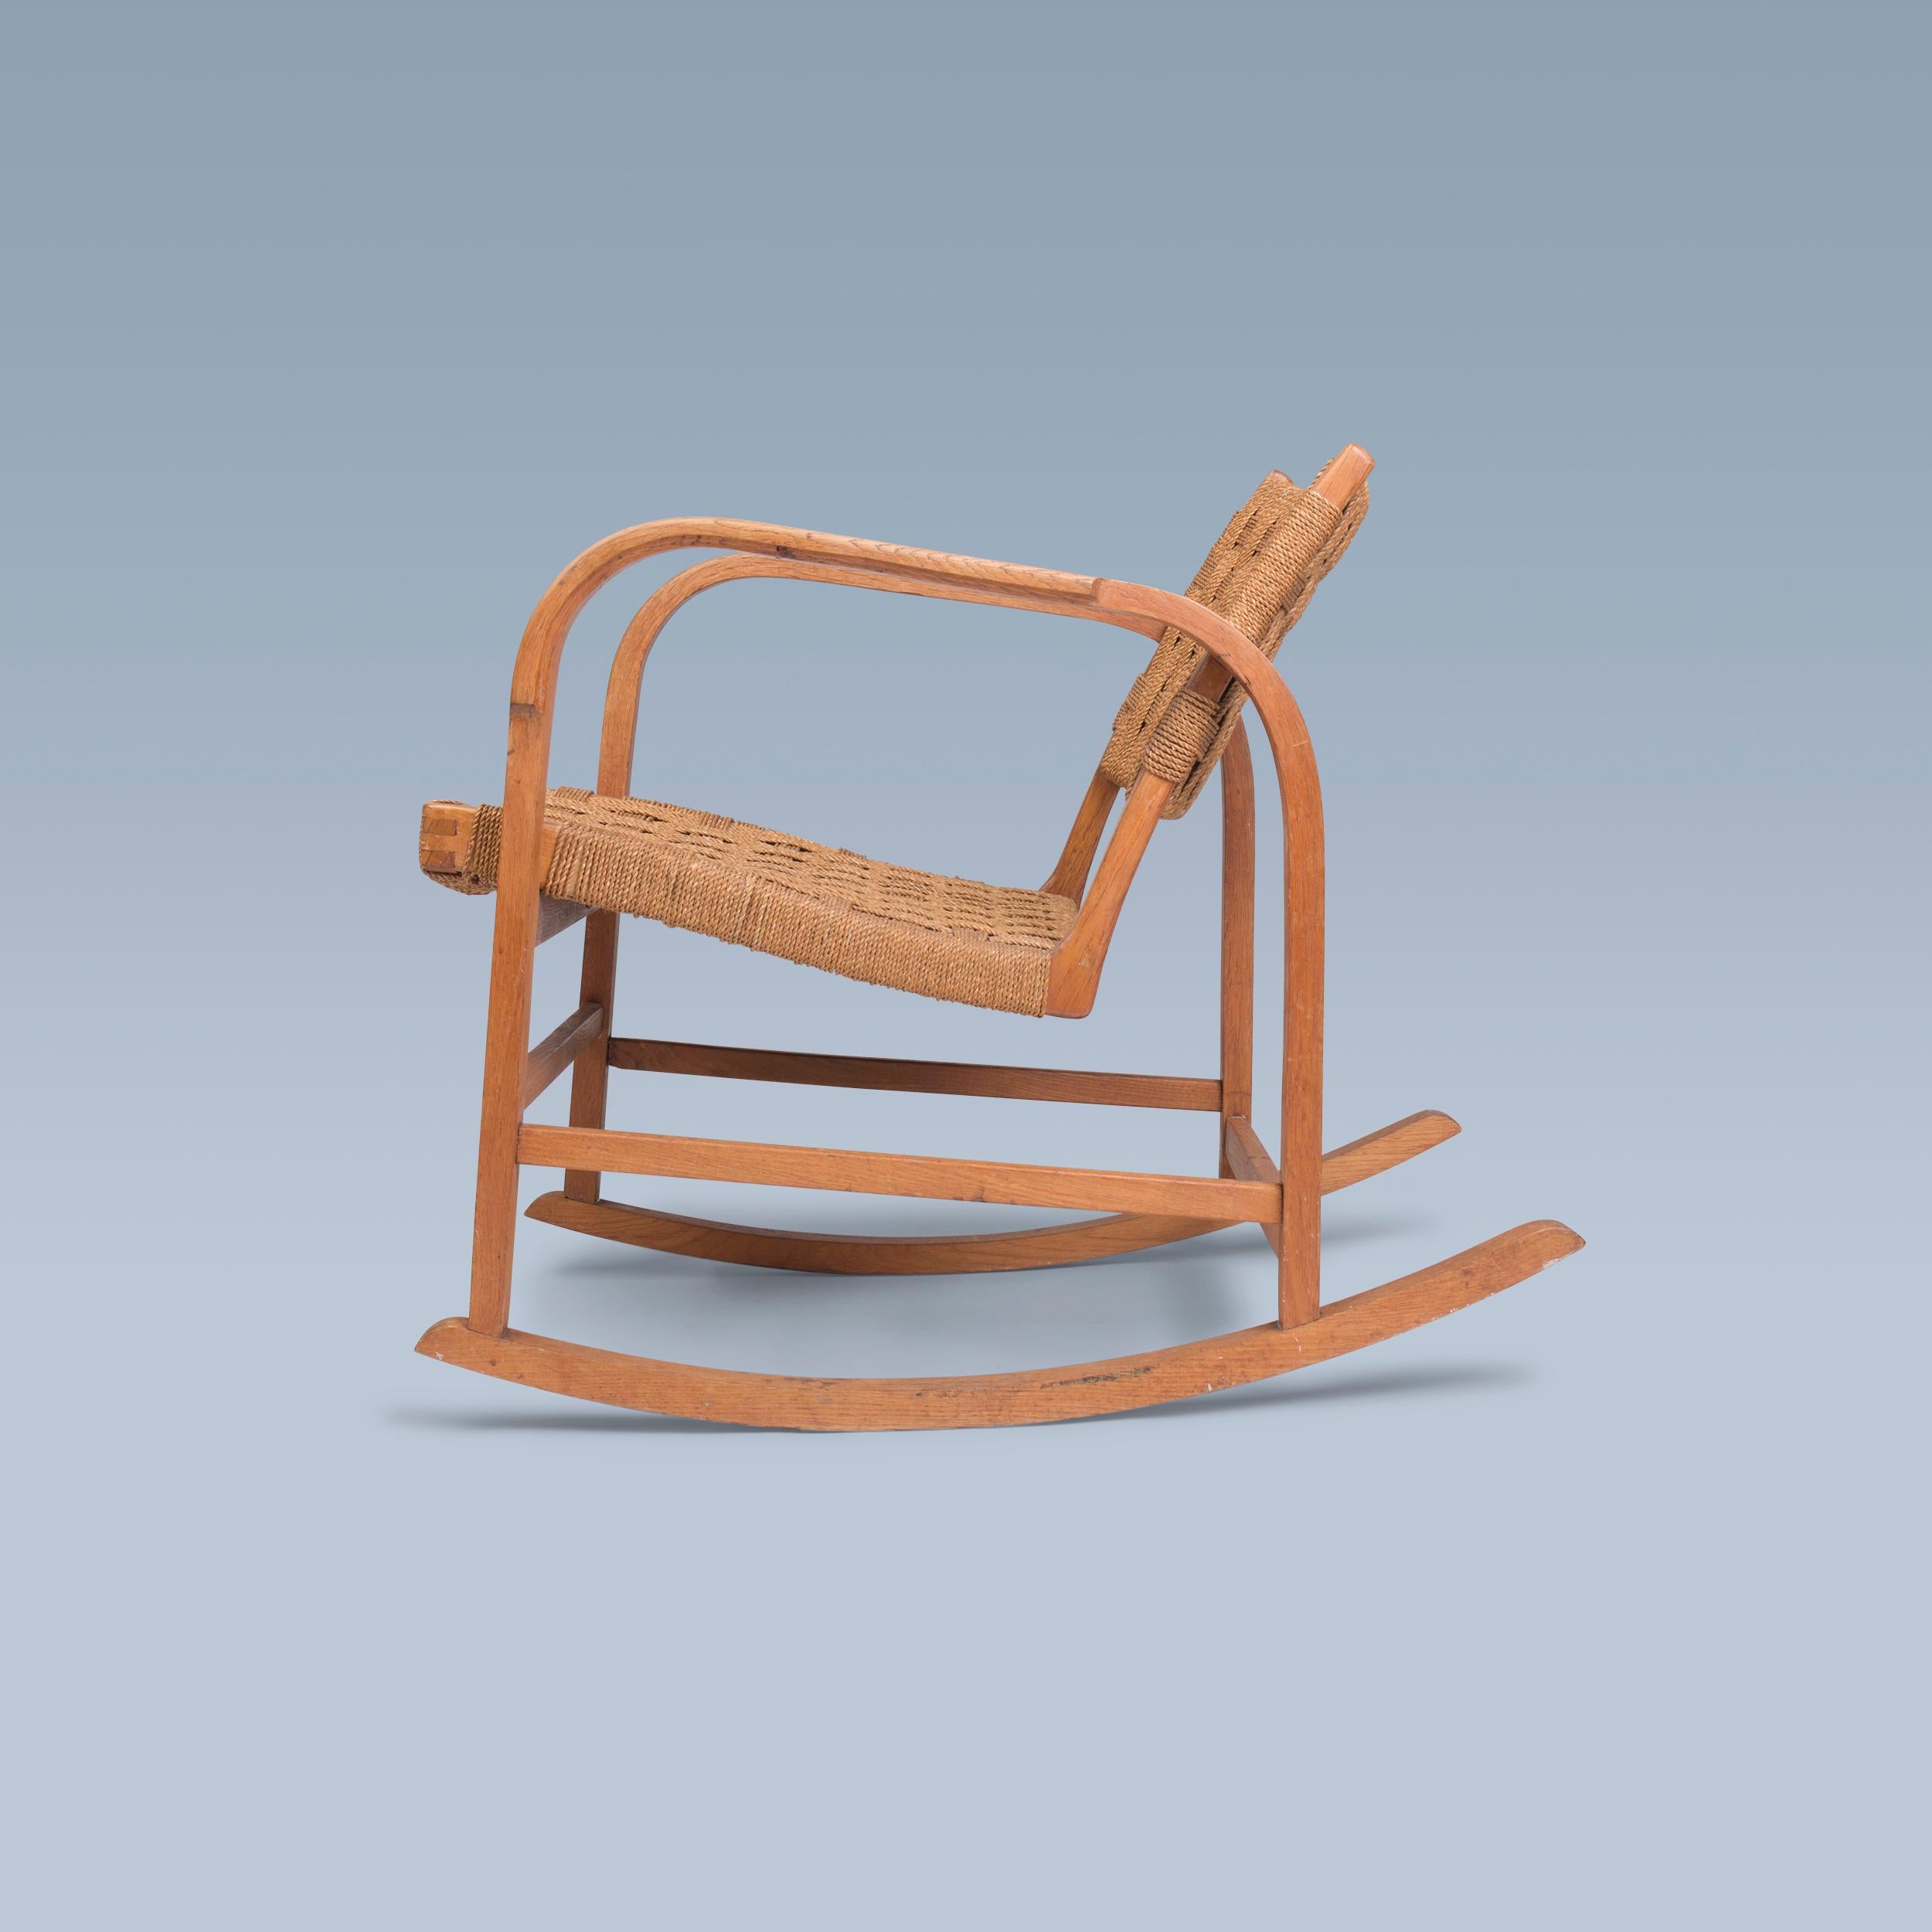 Ce rocking-chair en chêne patiné, conçu par Magnus Læssøe Stephensen (1903-1984), a une assise et un dossier en gazon marin tressé d'origine.

Il a été réalisé par l'ébéniste Clausen à Brørup, au Danemark, vers les années 1930.

Modèle similaire